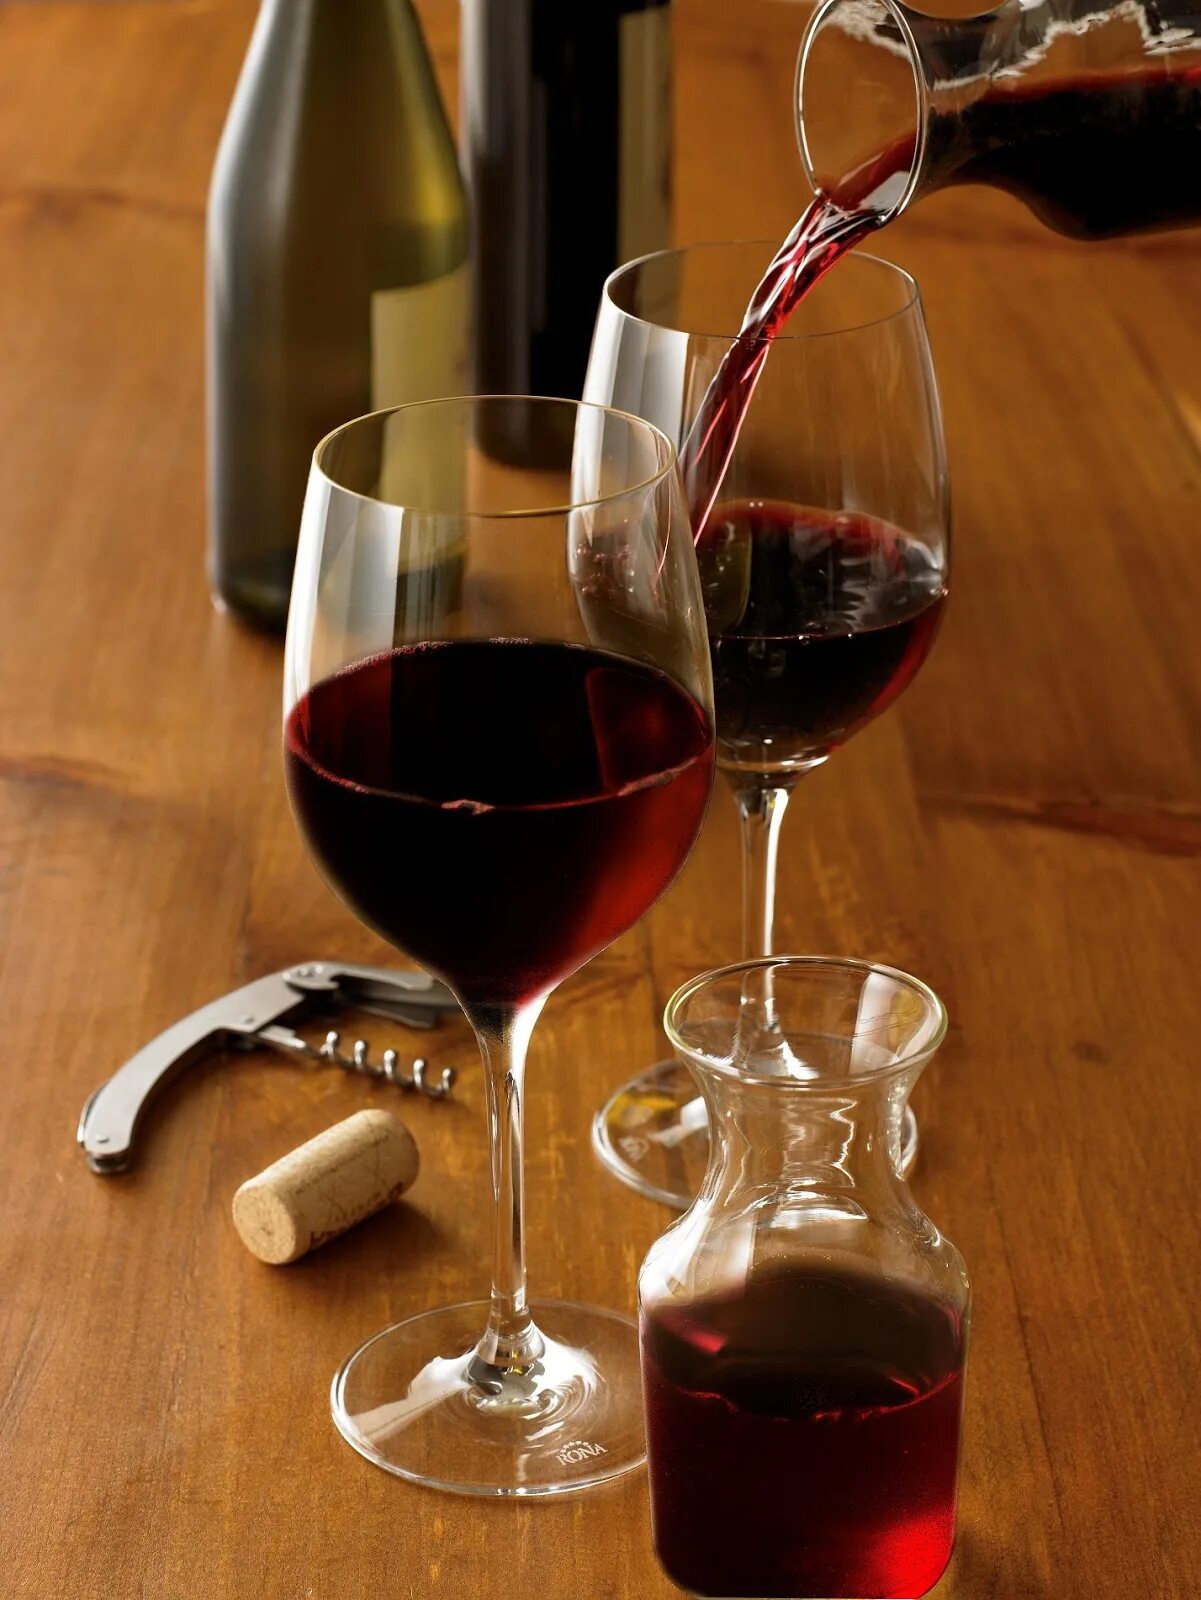 Картинка пить вино. Бокал с вином. Два бокала с вином. Бутылка вина. Фужер с вином.